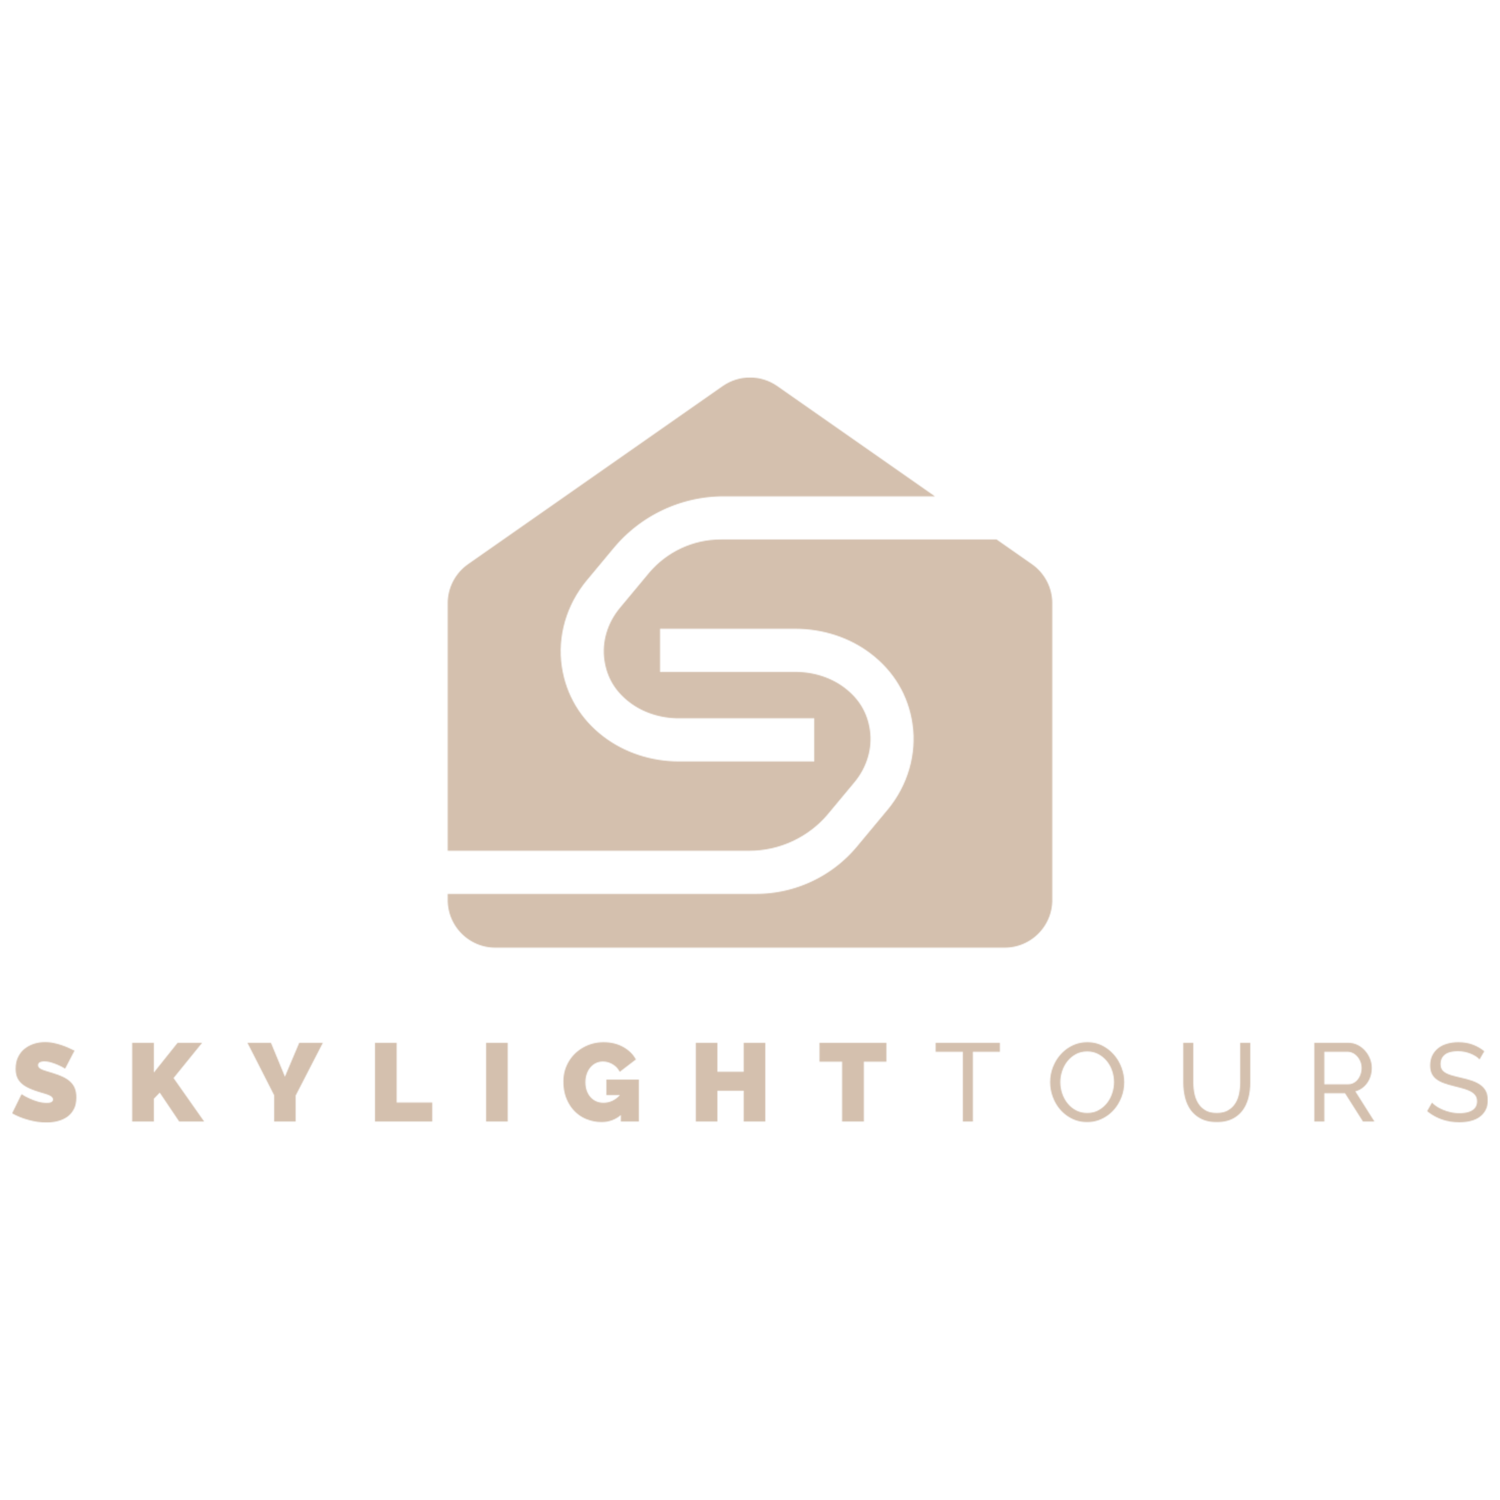 SkyLight Tours